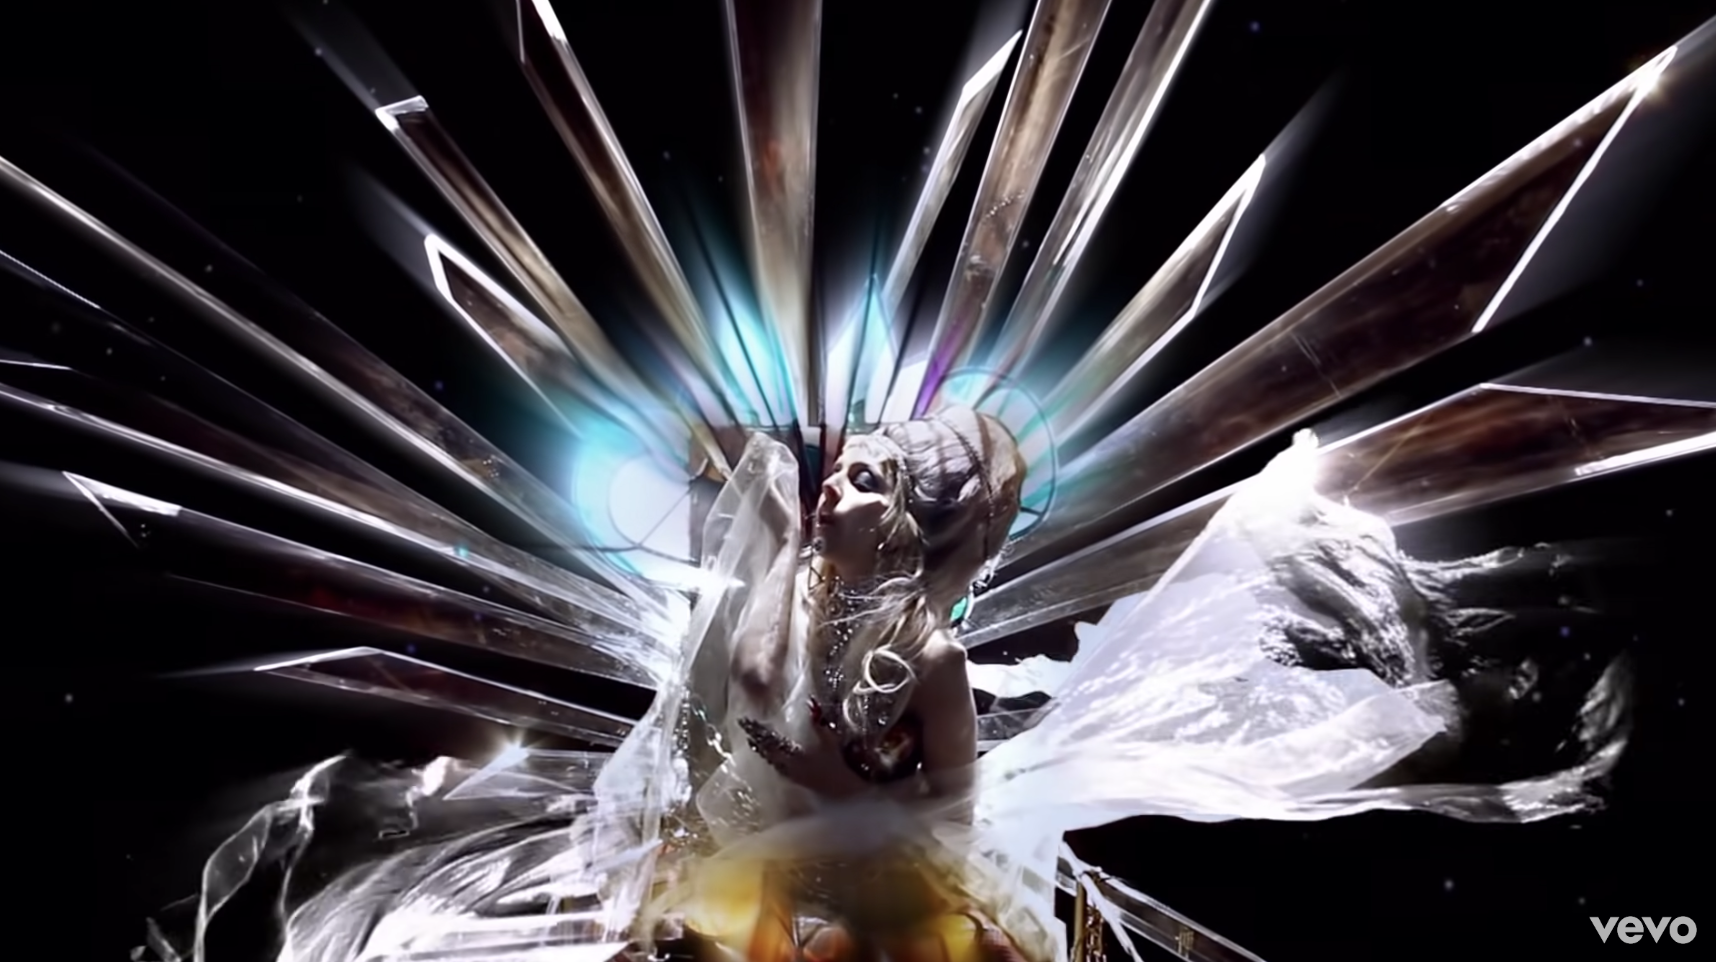 截图的Lady gaga # x27; s音乐视频,她# x27; s穿着银色闪亮的棱镜光围绕着她